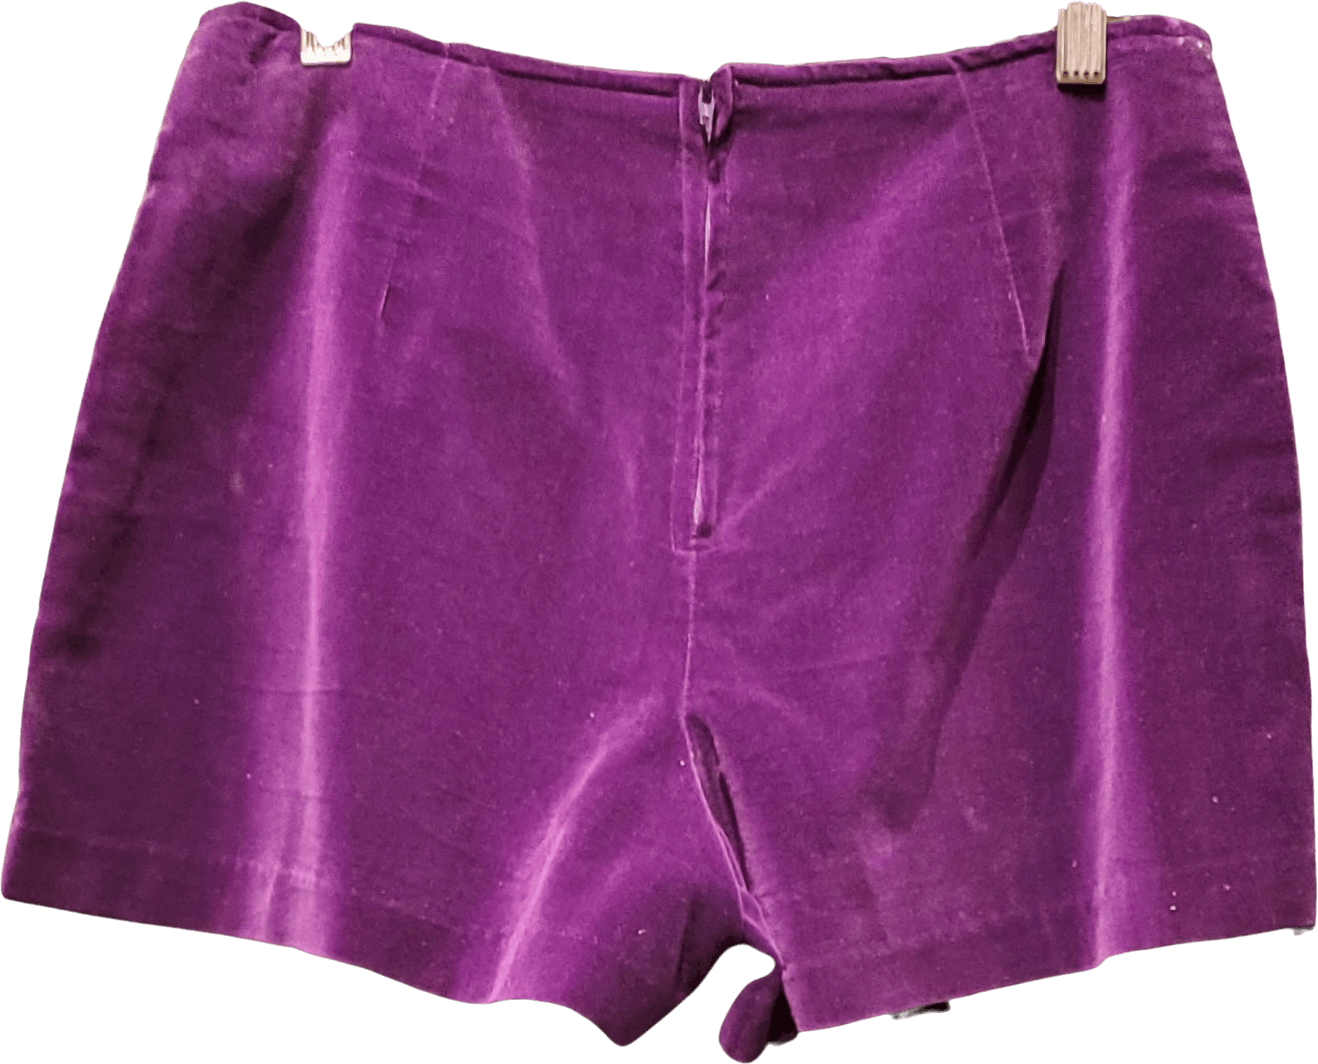 Vintage 70's/80's Deep Purple Velvet Hot Pants by Not Guilty | Shop ...